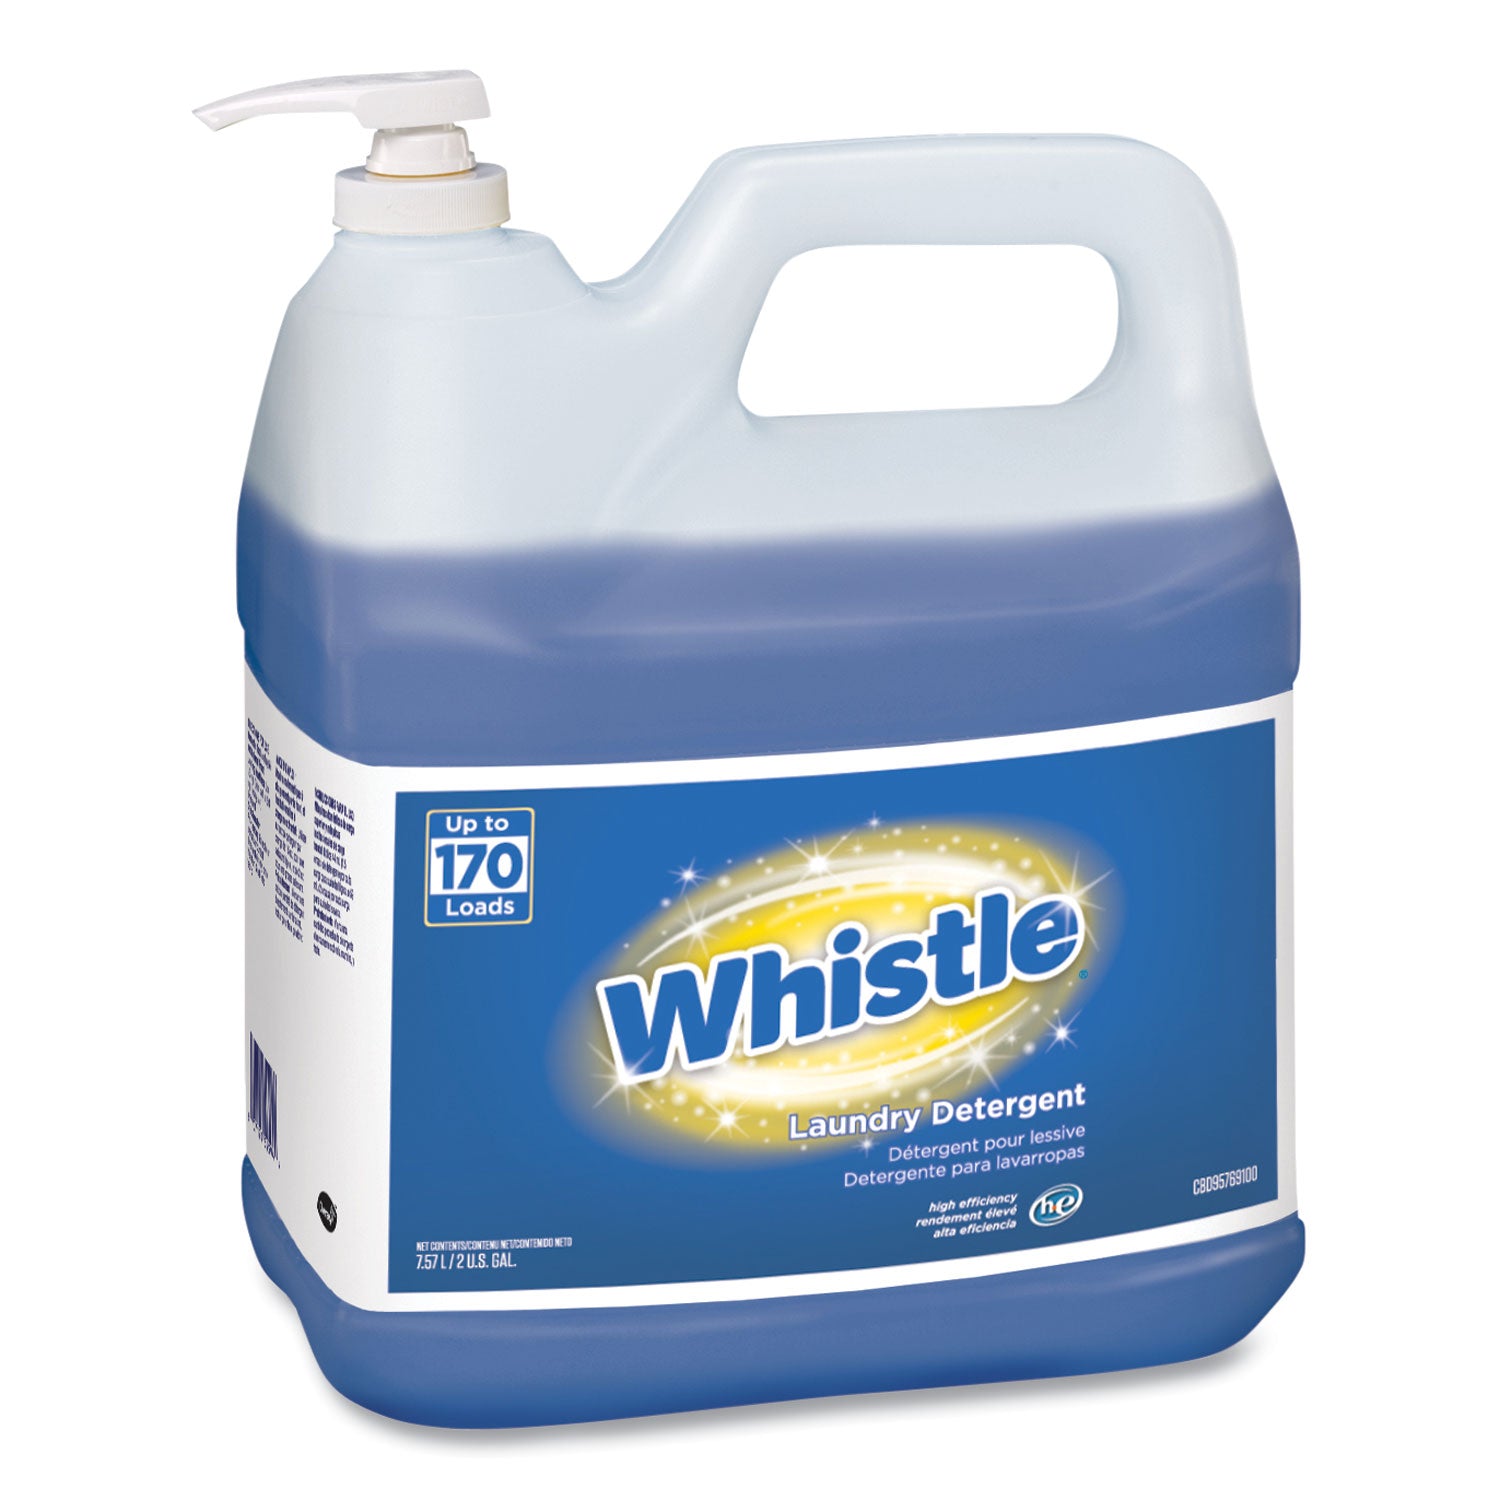 whistle-laundry-detergent-he-floral-2-gal-bottle-2-carton_dvocbd95769100 - 1